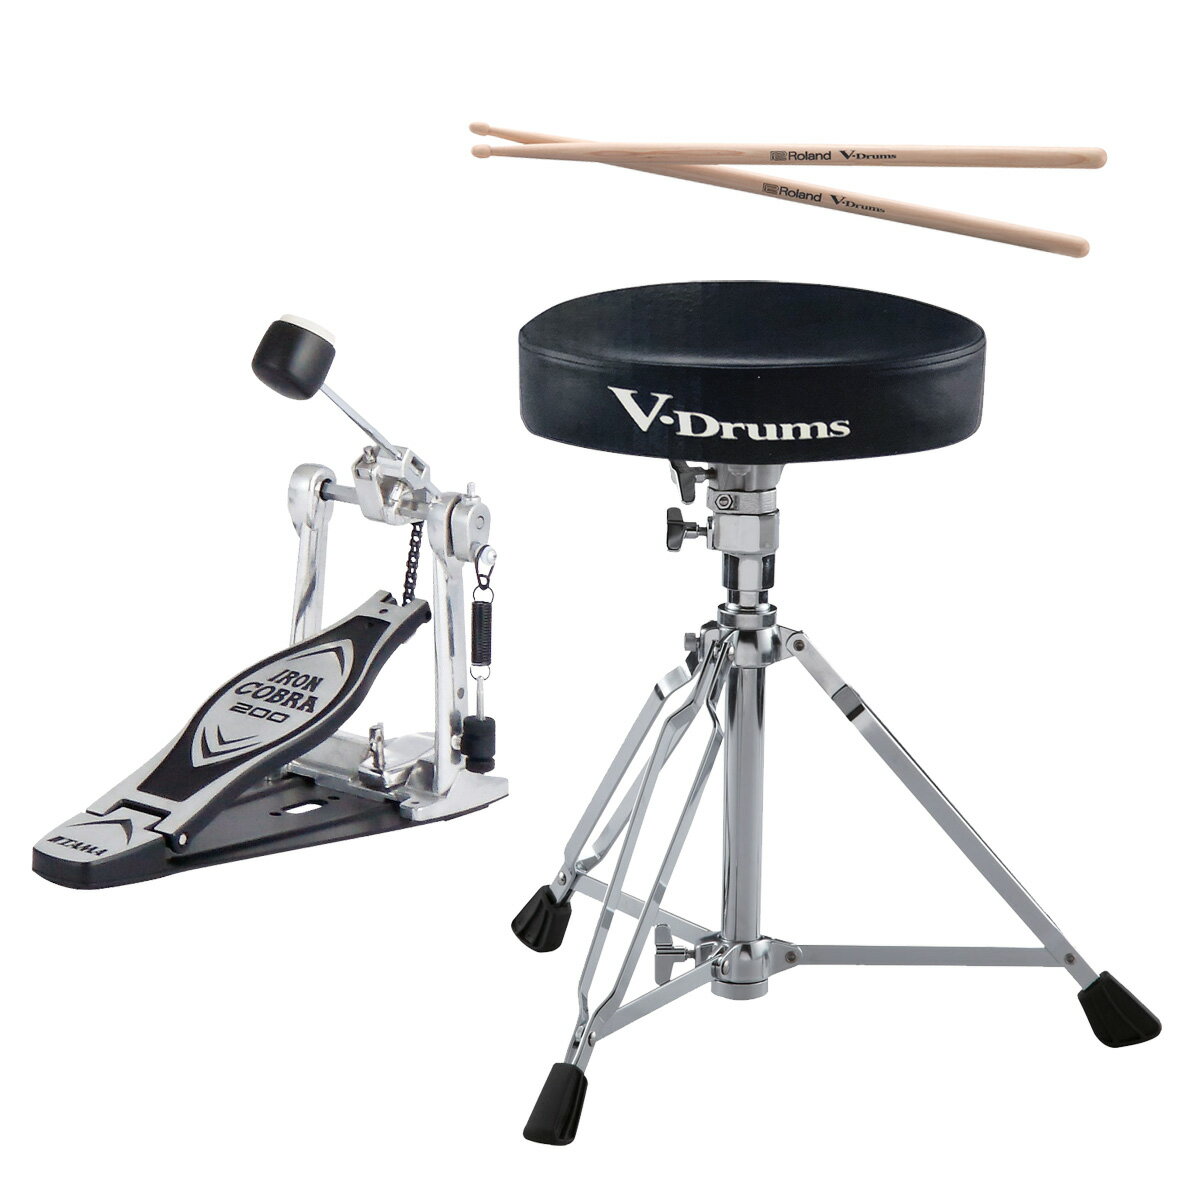 Vドラムを演奏するために必要なアイテムを1つにまとめたセット ●キックペダルが別売のV-Drumsは、演奏するために「キックペダル」と「ドラムイス」「ドラムスティック」が必要です（※注1）。この必要なアイテム3点を1つにまとめたセット商品です。 ●ドラムイスとスティックはローランド製、キックペダルはTAMAの定番モデルを採用しました。 セット内容 1.Roland DAP-2X（ドラムイスとドラムスティック） 2.TAMA HP200P（シングル・キックペダル） 主な特長 ●ドラムイス ドラムイスは三脚部が長期間の日常的なドラム演奏に最適な耐久性を備えたダブル・レッグ仕様。 自由な高さ調節が可能なメモリーロック付きのパイプスライド式（クランプロッド方式）です。 シートの横には「V-Drums」「Roland」のロゴ入り ●ドラムスティック メッシュ・ヘッドとの相性を考慮したヒッコリー製のロゴ入りドラム・スティック ●キックペダル 素早いアクションが得られるパワーグライド・カムを採用。シングルチェーンドライブ、ビーター角度と連動してフットボード角度調整機能、しっかりした踏み心地のアンダープレート式といったスタンダードな仕様のTAMA IRONCOBRA200ドラムペダル。 トラディショナルなフェルト面と電子ドラムに適した樹脂面を持った「デュアルサイドビーター」は、電子ドラムで使用する際に嬉しい仕様です。 留意事項 ※イシバシ楽器でセットにした商品です。 ※DAP-2Xのバラ売りはございません。 ※メーカー保証書は付属しません。 注意事項 （※注1）V-Drumsは、内蔵している音を聞くためのヘッドホンまたはモニタースピーカー（アンプ）も別売です。